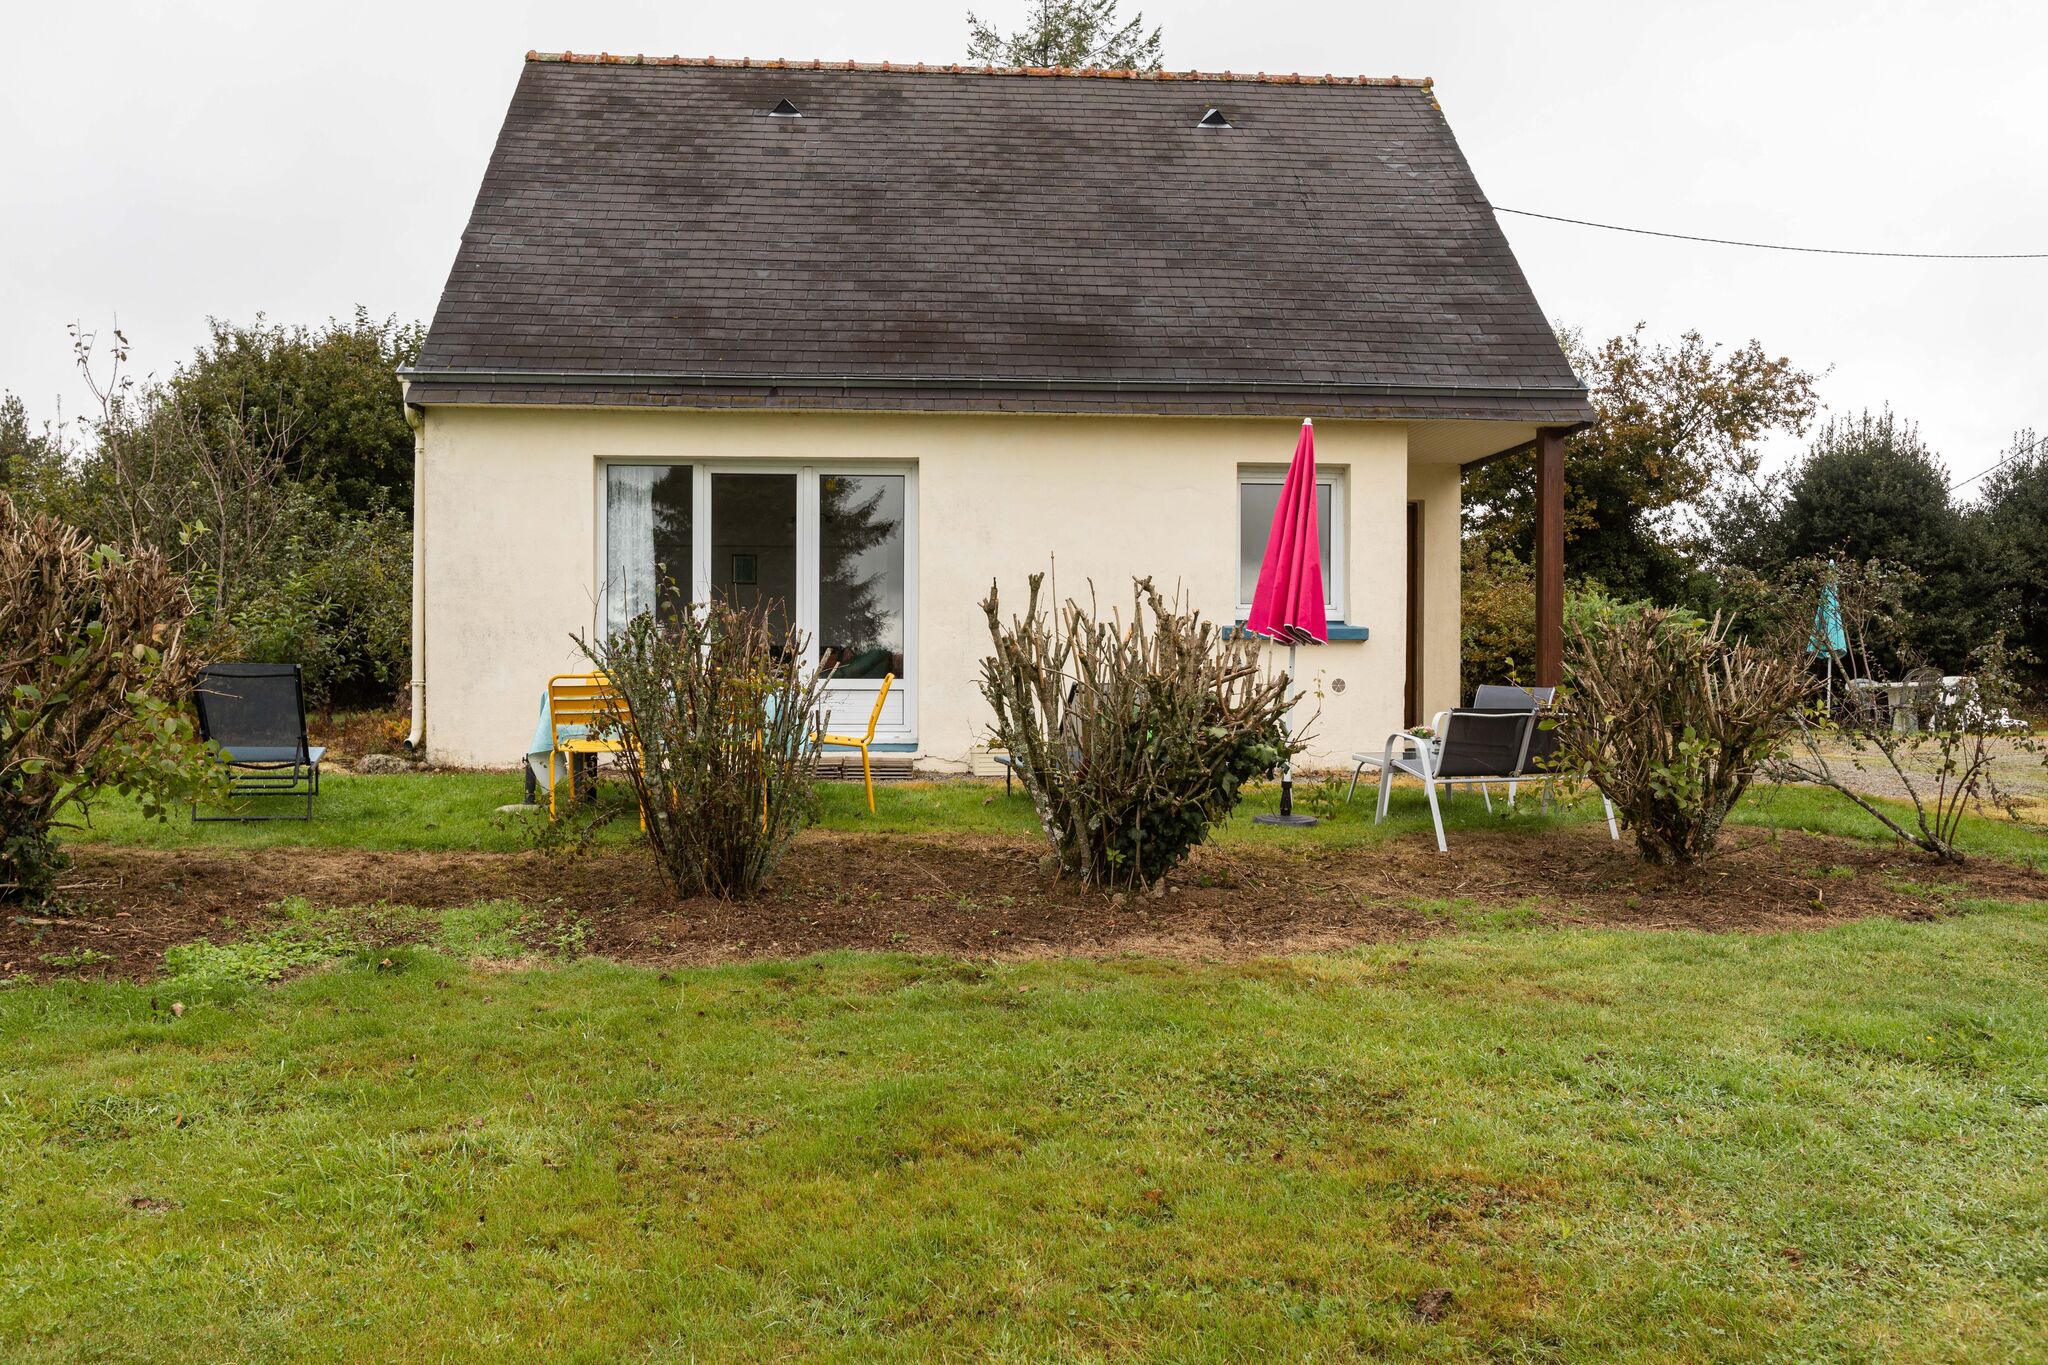 Huis met mooi terras en tuin, centraal in Bretagne gelegen.